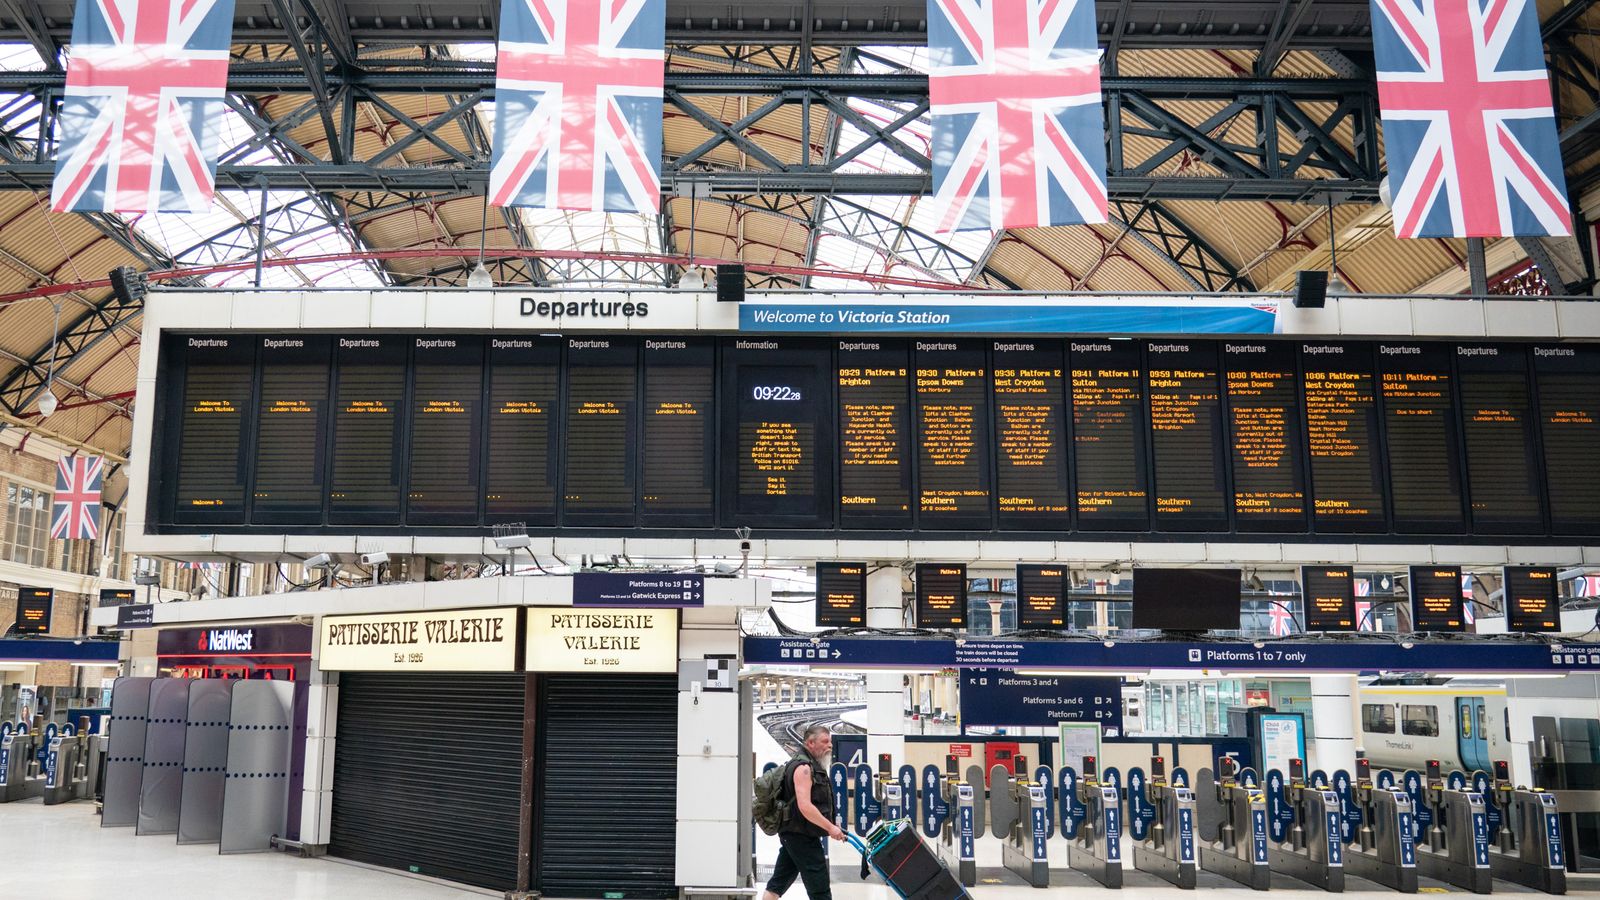 ركاب القطارات يواجهون المزيد من الاضطرابات مع إضراب سائقي القطارات خلال عطلة نهاية الأسبوع المزدحمة |  أخبار المملكة المتحدة